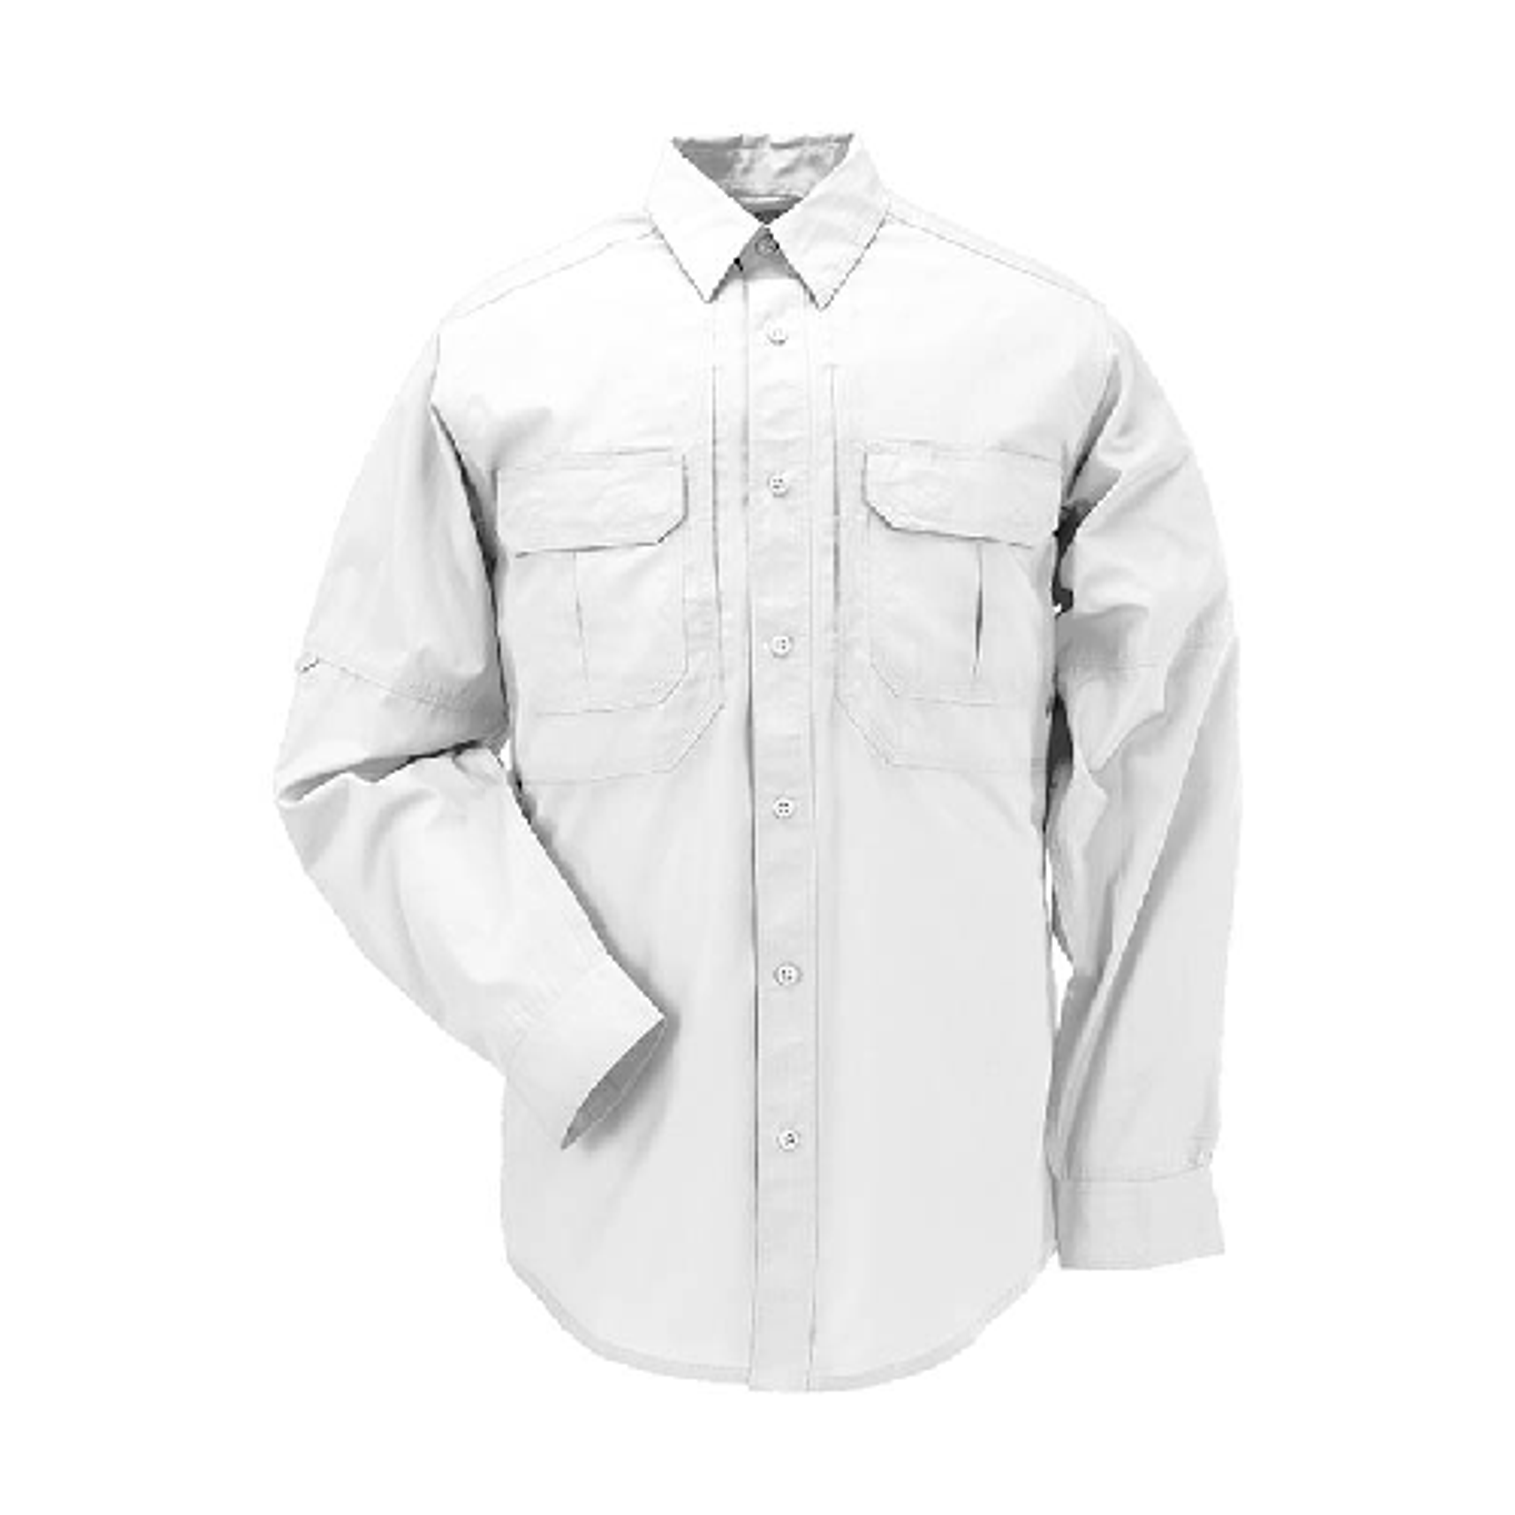 Taclite Pro L/s Shirt - KR5-72175010M